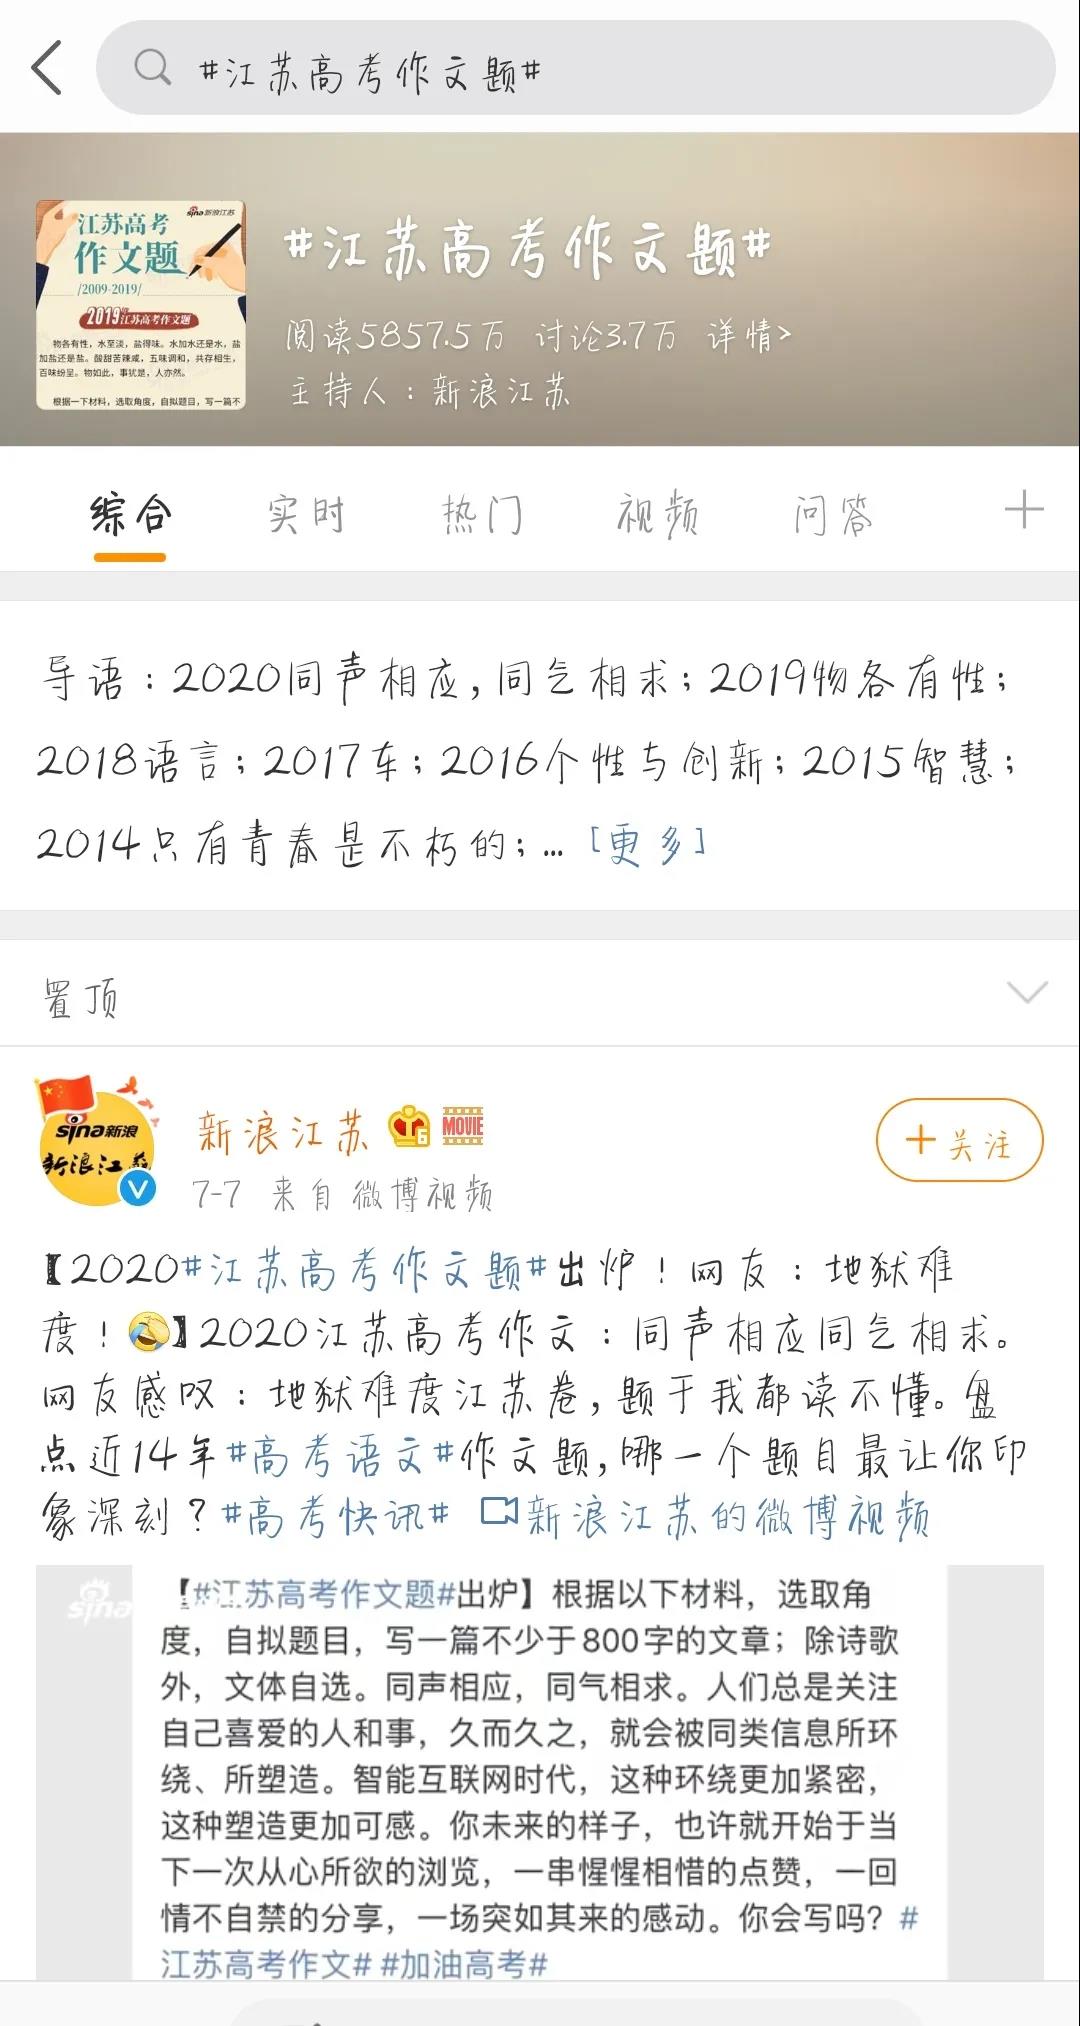 2020高招落幕,明年江苏高考启用全国统一卷